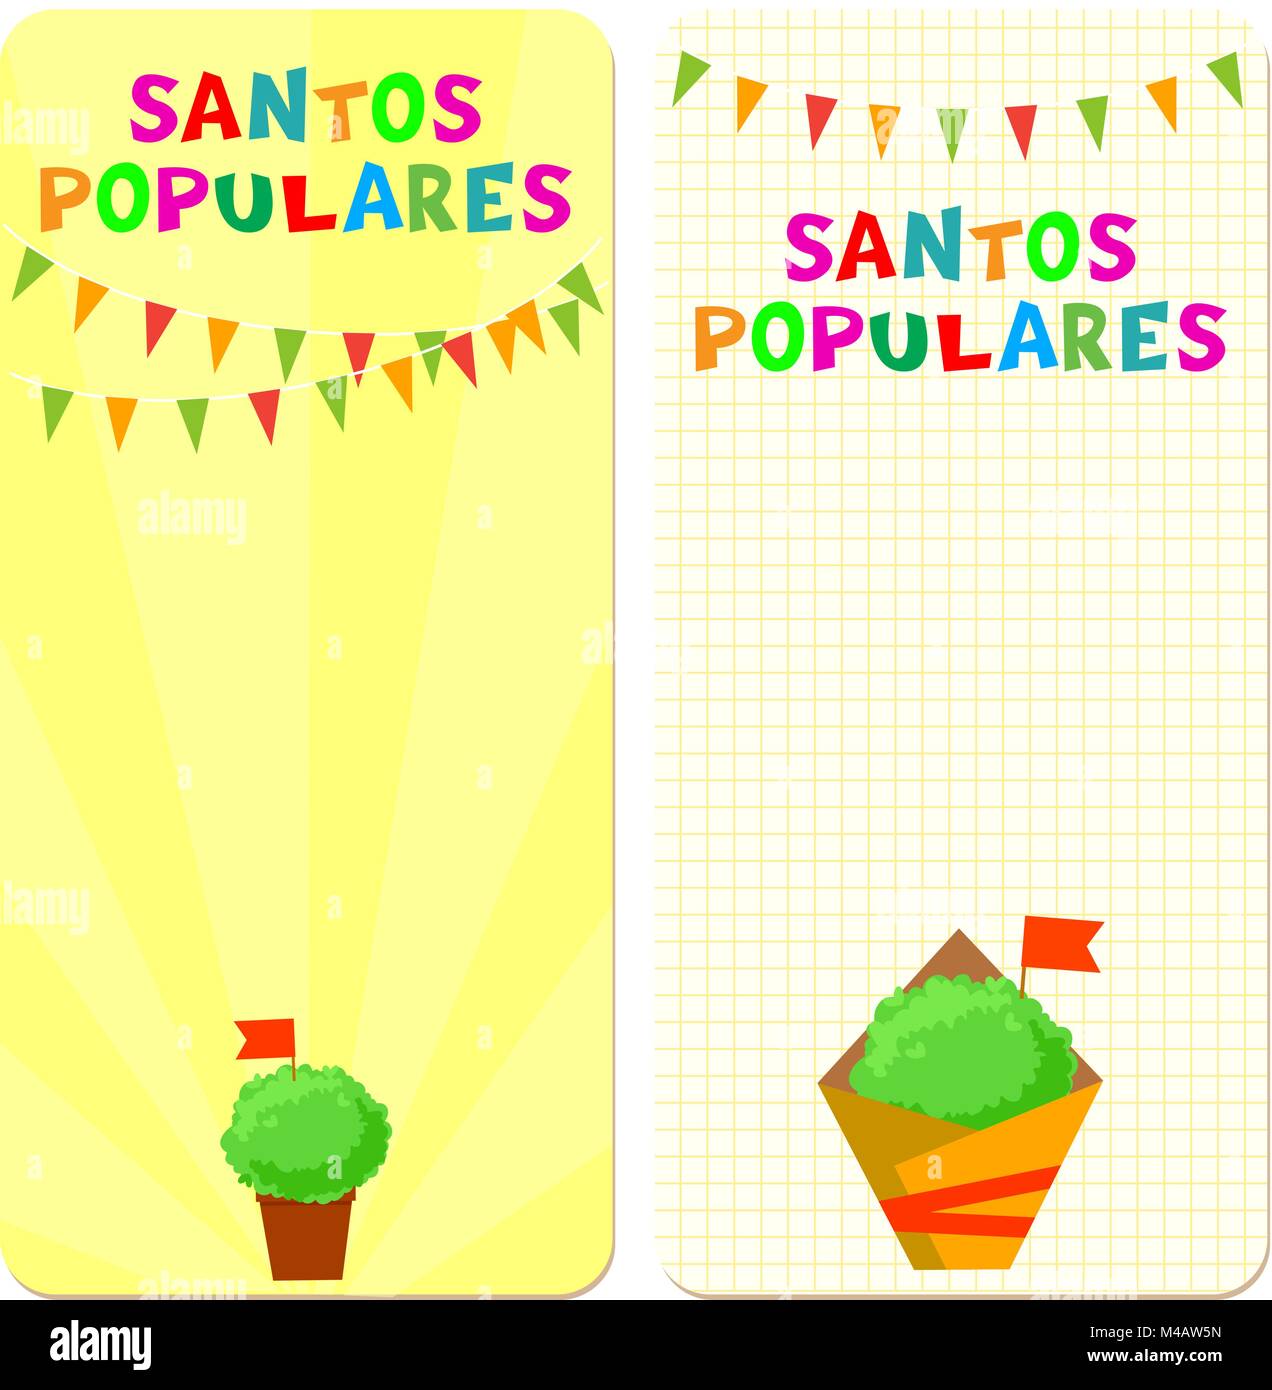 Santos Populares (santi popolari) vacanze schede modello. Illustrazioni vettoriali con bunting ghirlande e manjerico (basilico) piante. Illustrazione Vettoriale